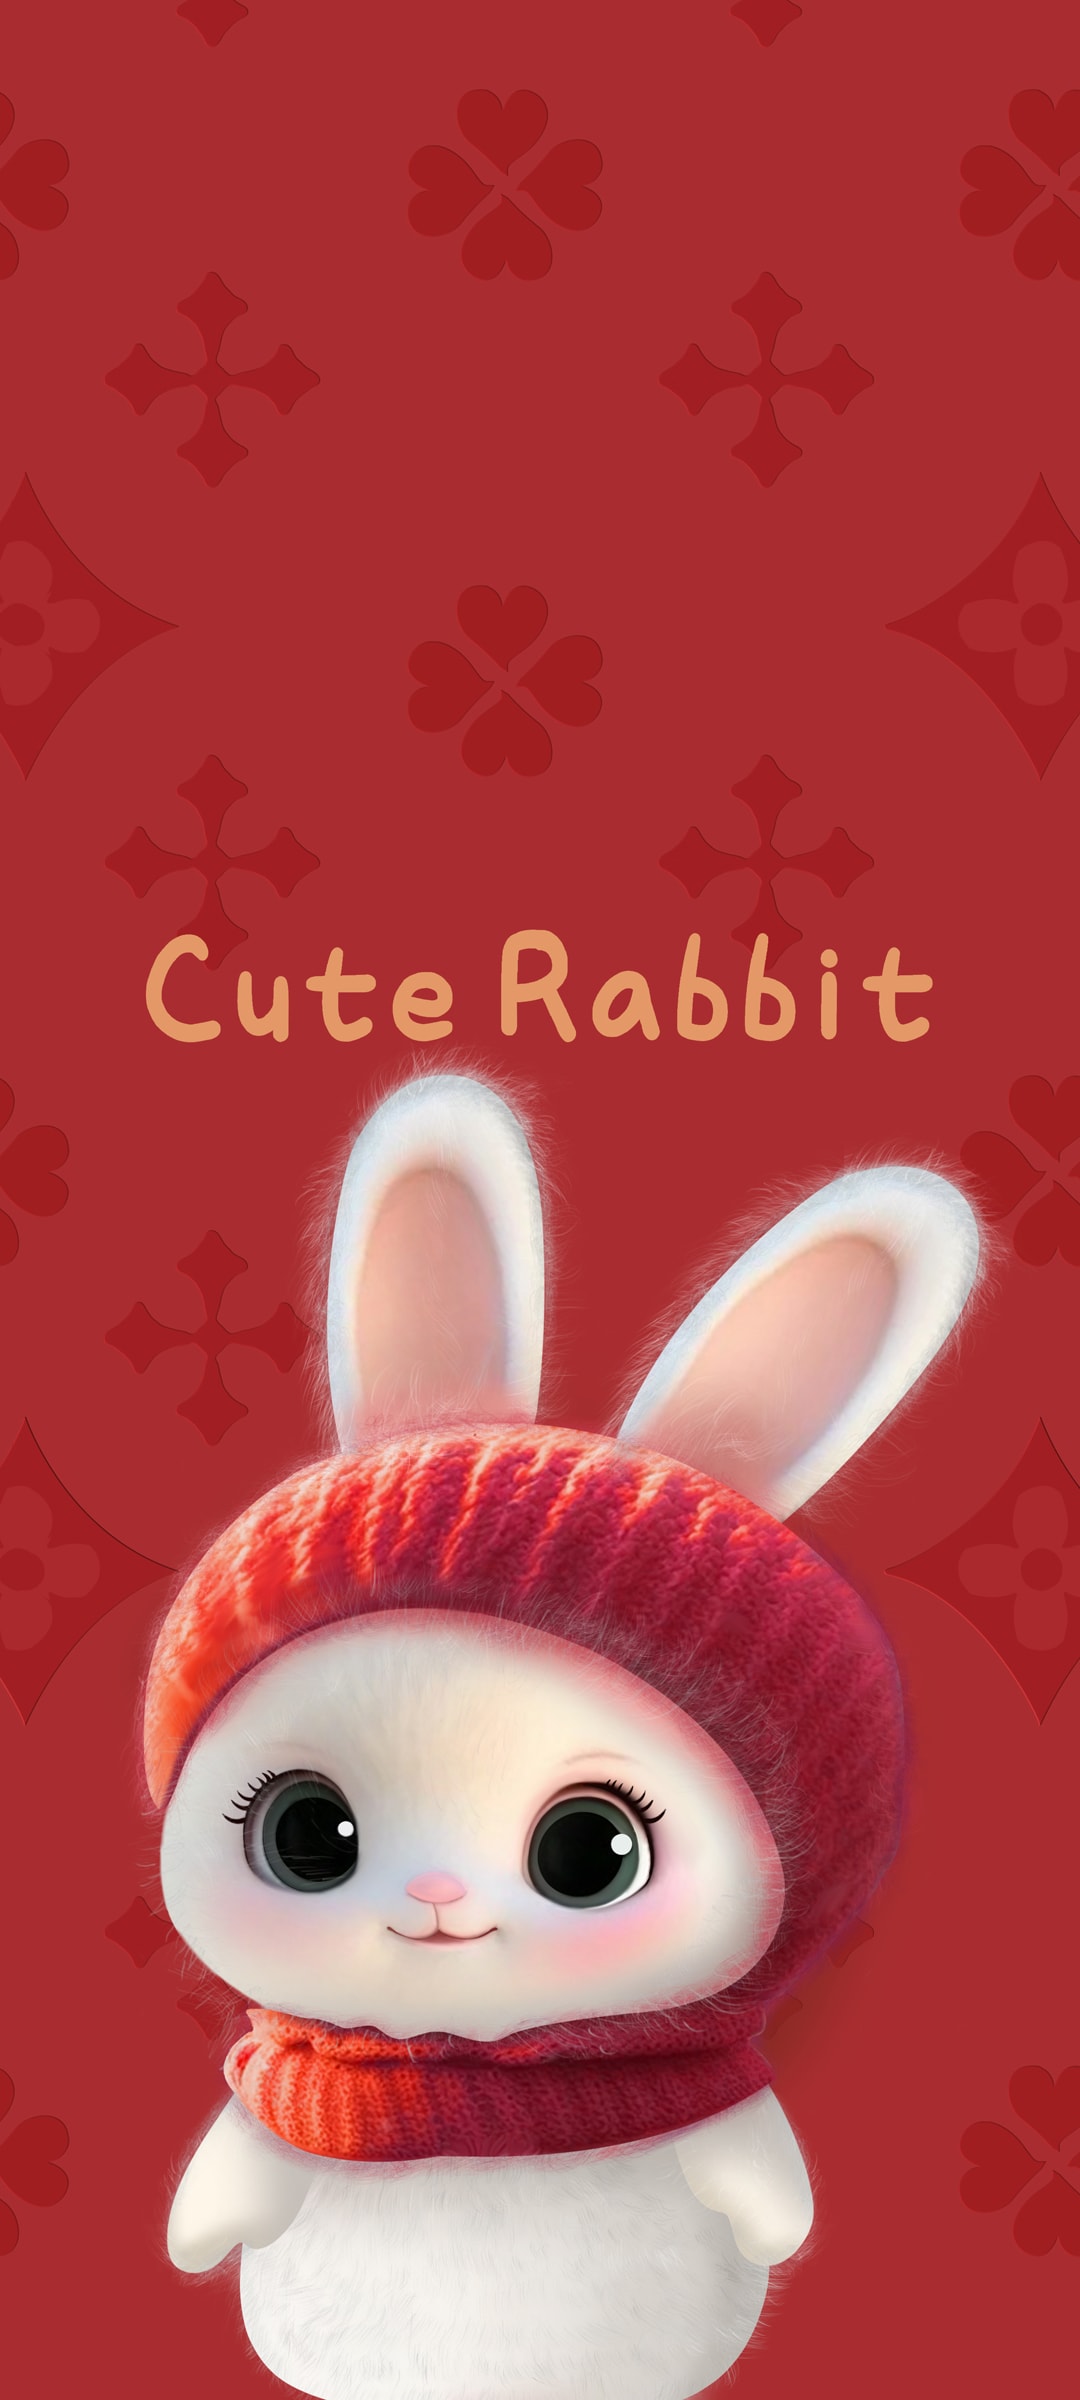 围着围巾的可爱兔子